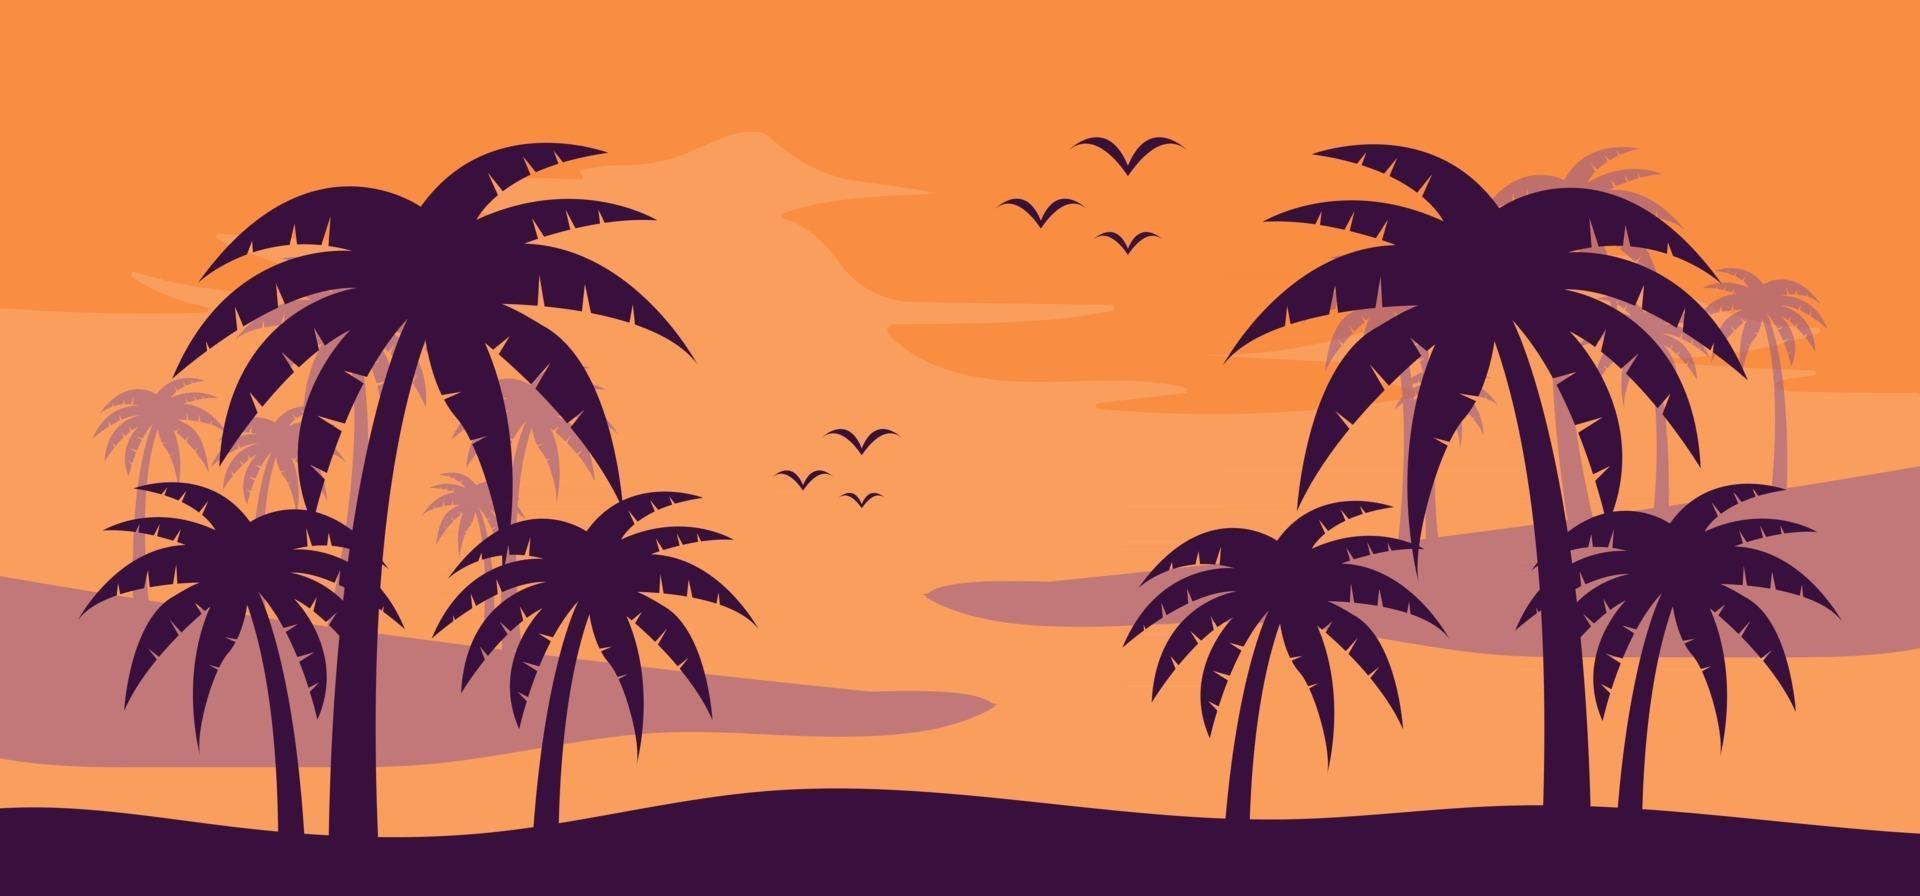 zomer banner sjabloon vectorillustratie voor sociale media vector